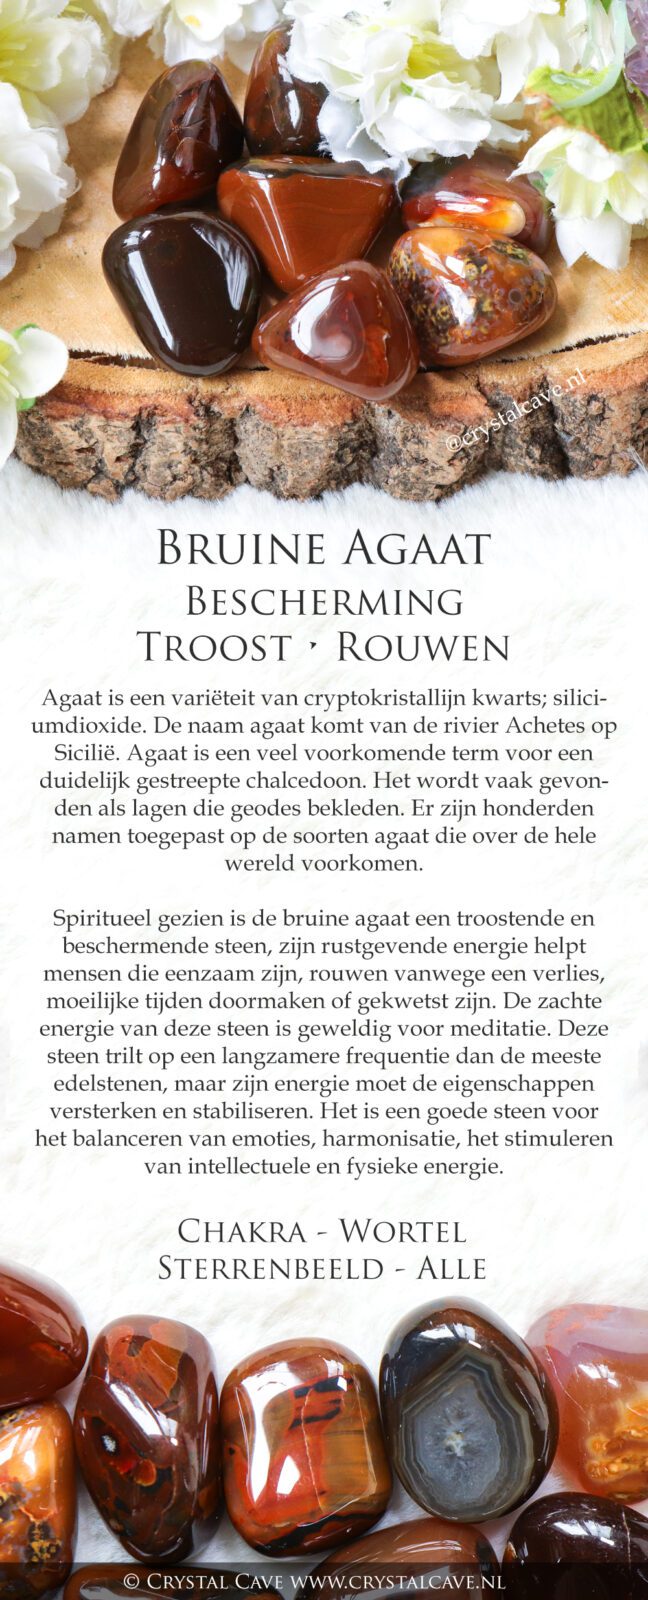 Bruine agaat betekenis - Crystal Cave